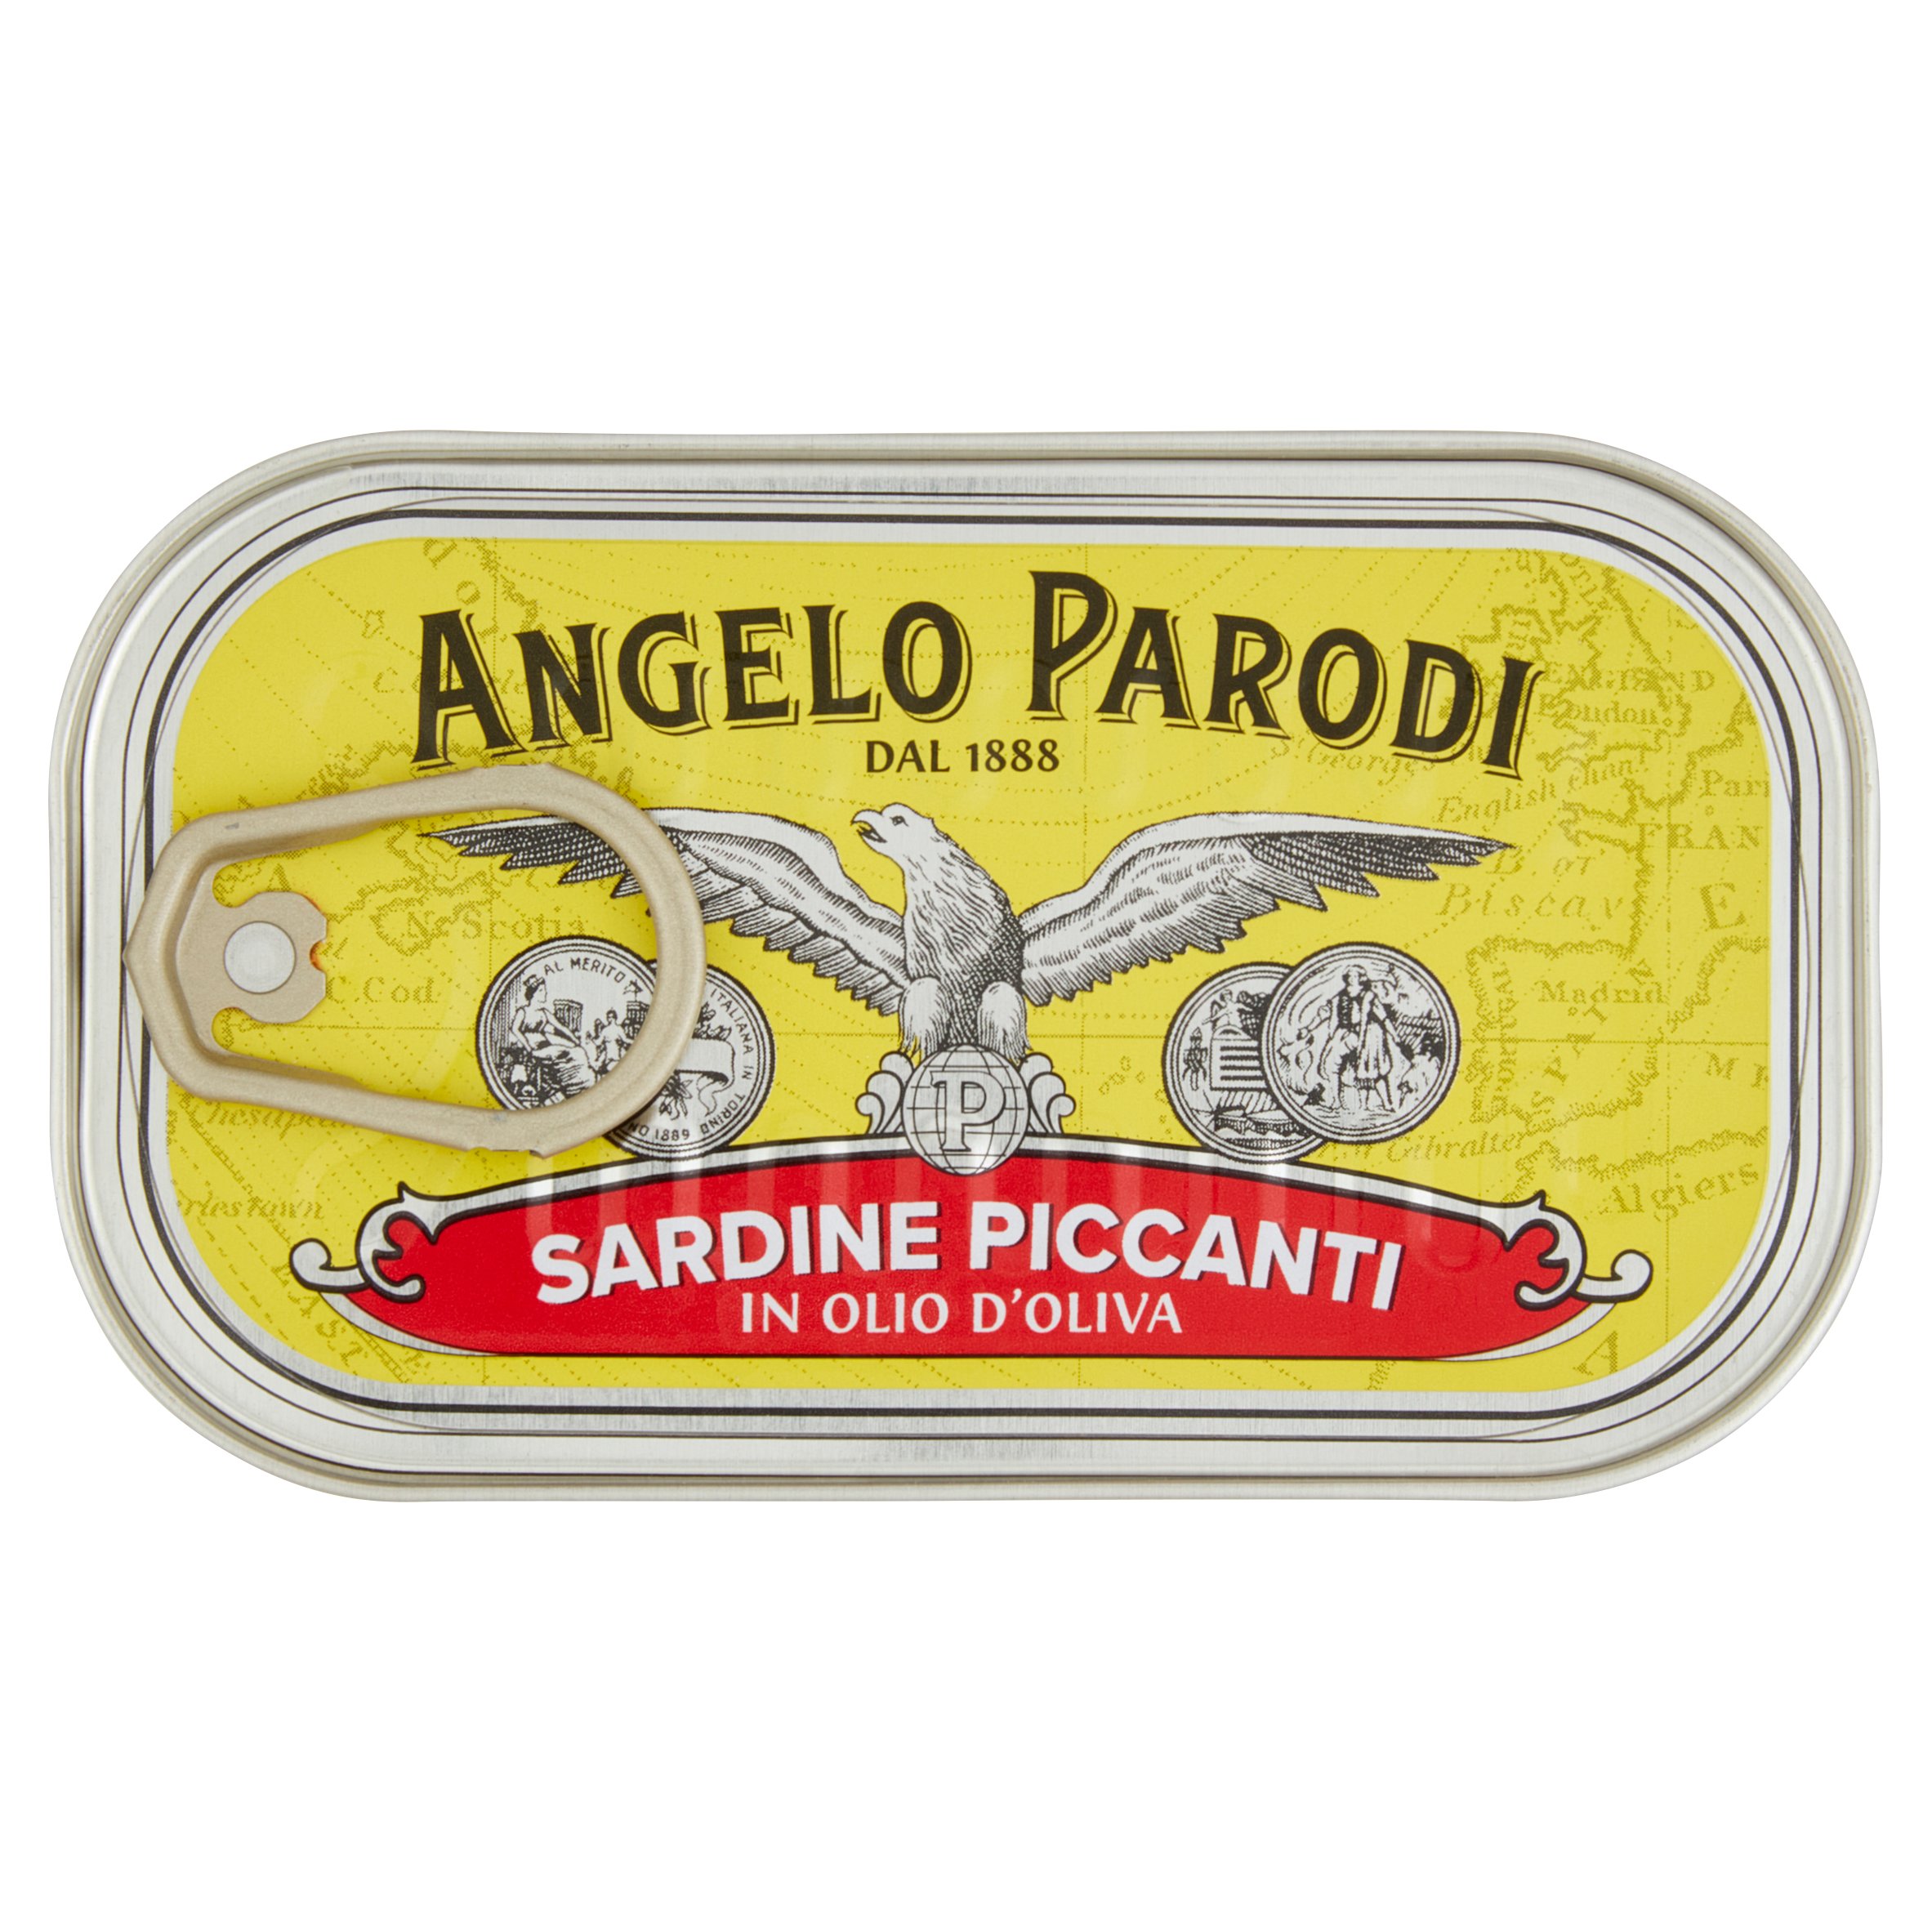 angelo parodi prodotti 2 lunga conservazione tonno sardine piccanti oliva gr 120 angelo parodi 0